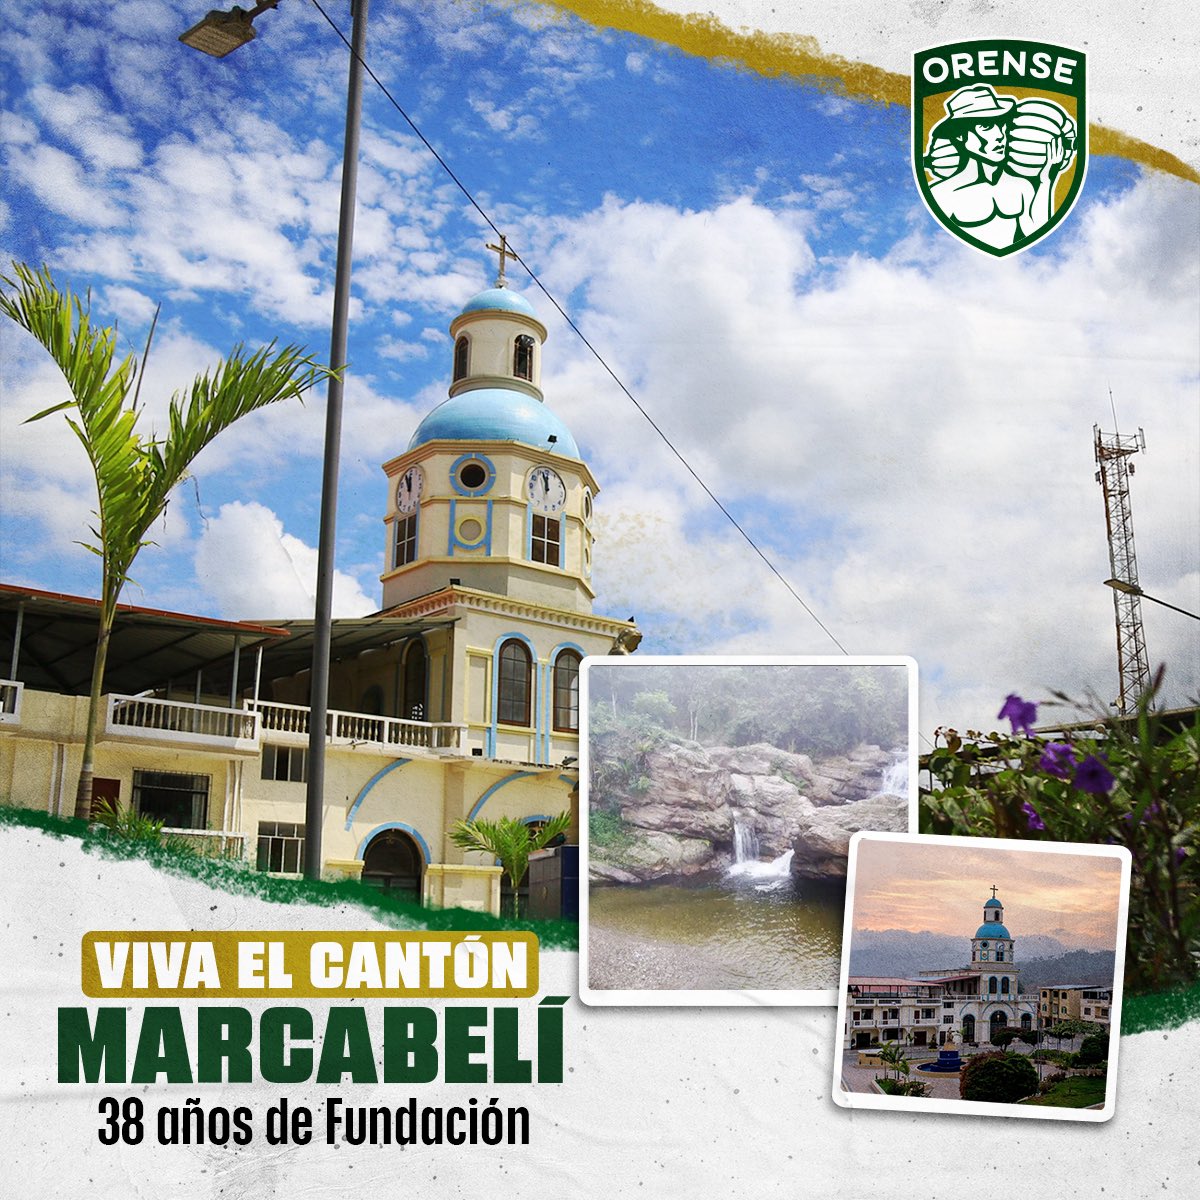 ¡Celebramos al #CantónOrense Marcabelí! 🎉💚 Un cantón lleno de paisajes mágicos y de gente cálida. Nuestras felicitaciones a sus autoridades y ciudadanos en sus 38 años de fundación. 🤝👏 #Marcabelí #ElOro #Cantonización